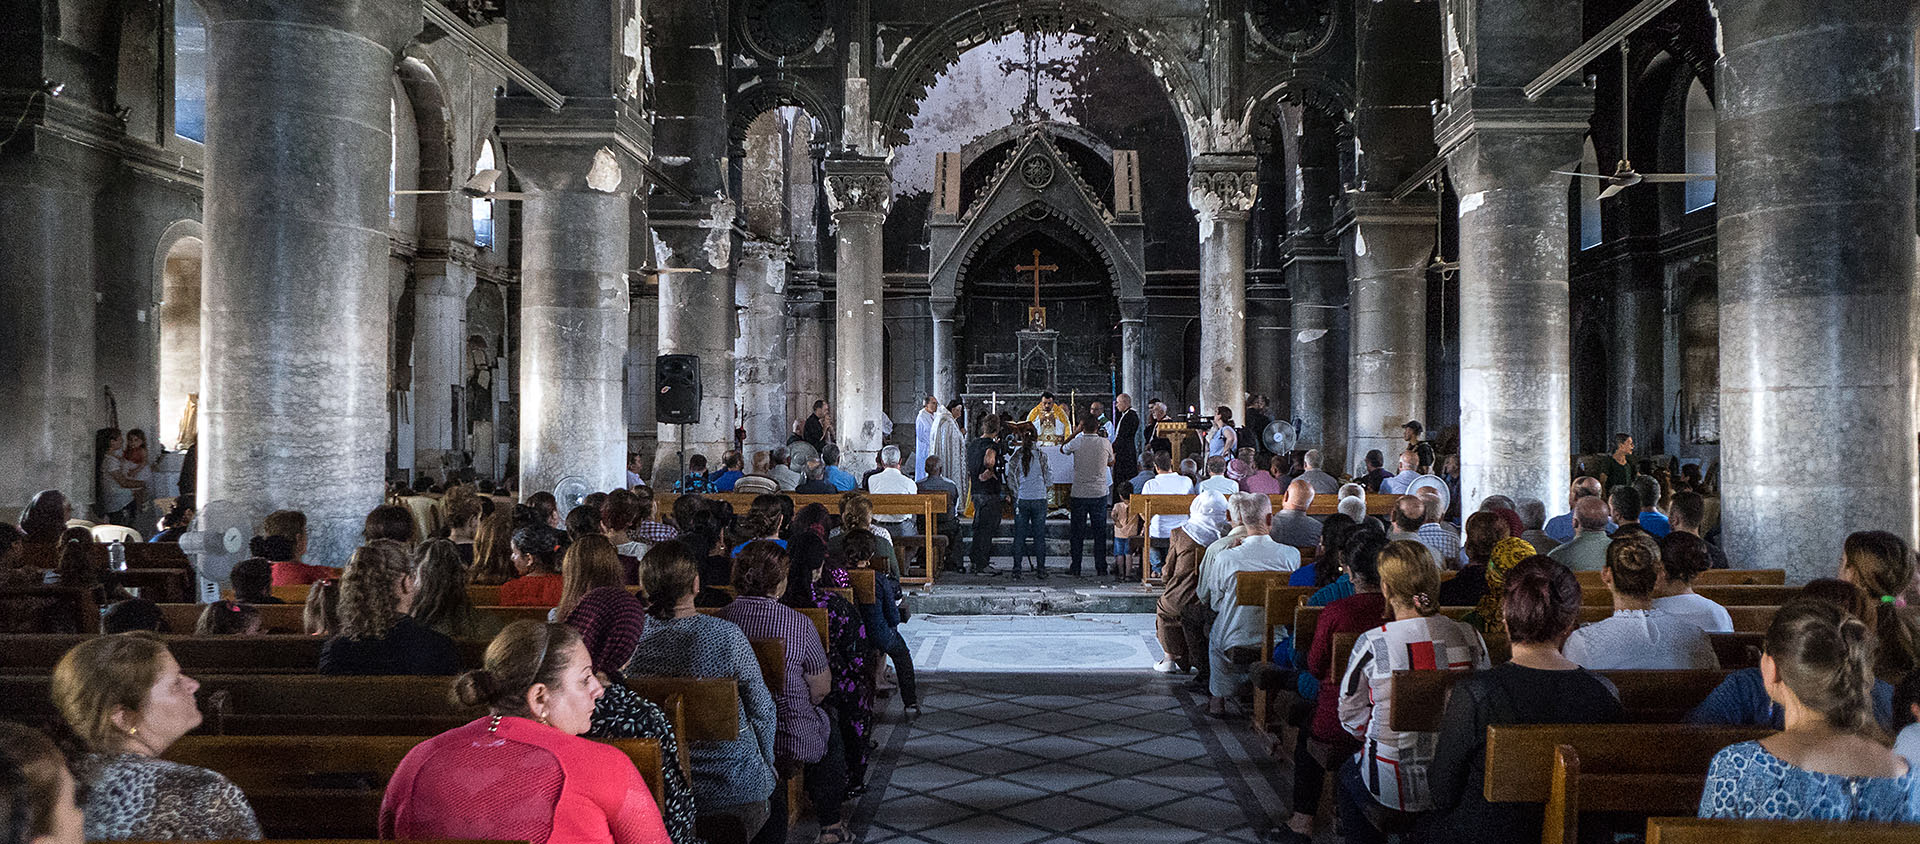 La communauté chrétienne revient timidement après l'occupation de Daech | © Pascal Maguesyan